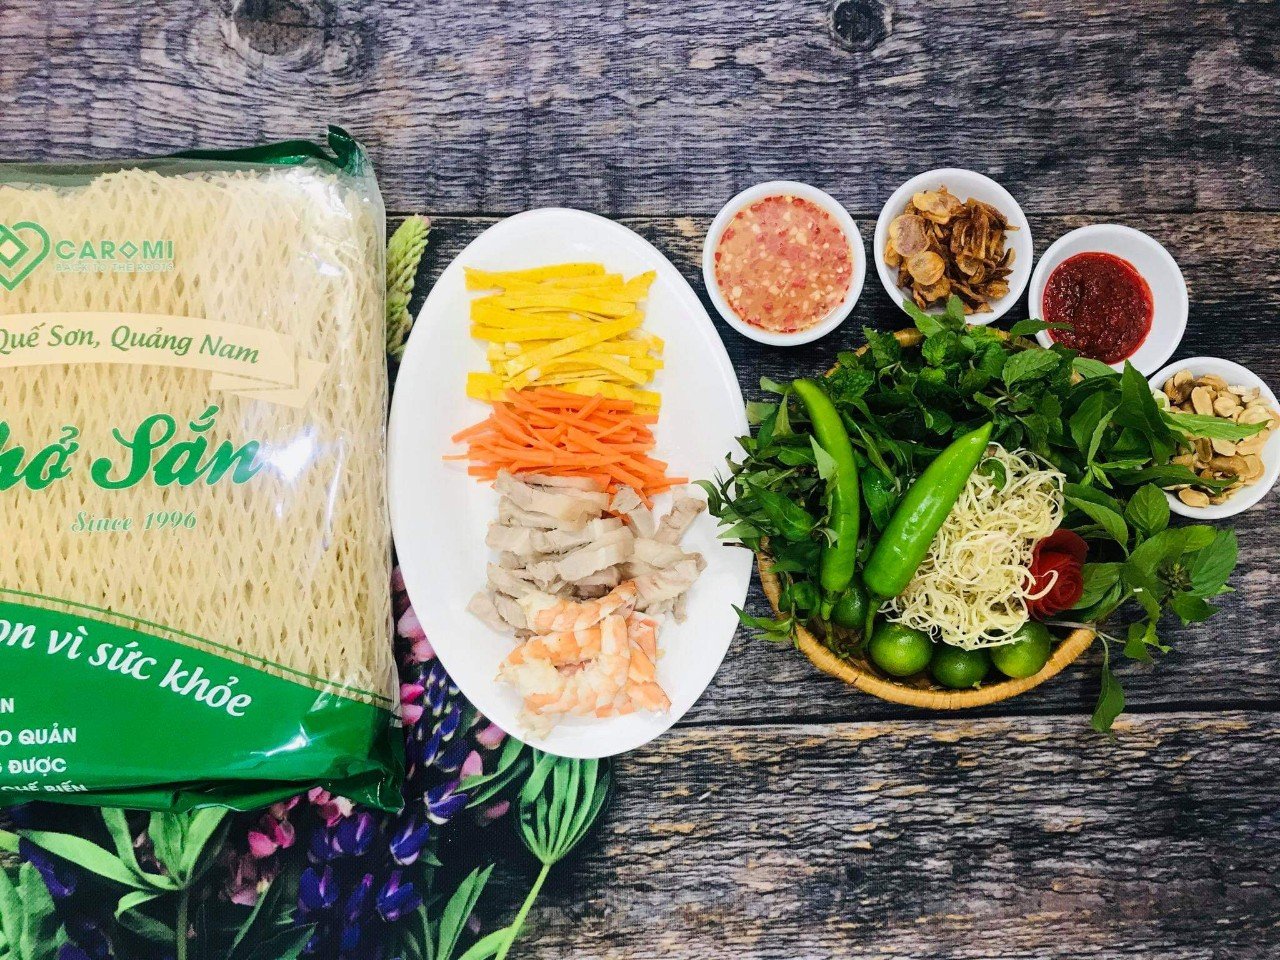 Unique Quang Nam cassava noodle soup nnnn